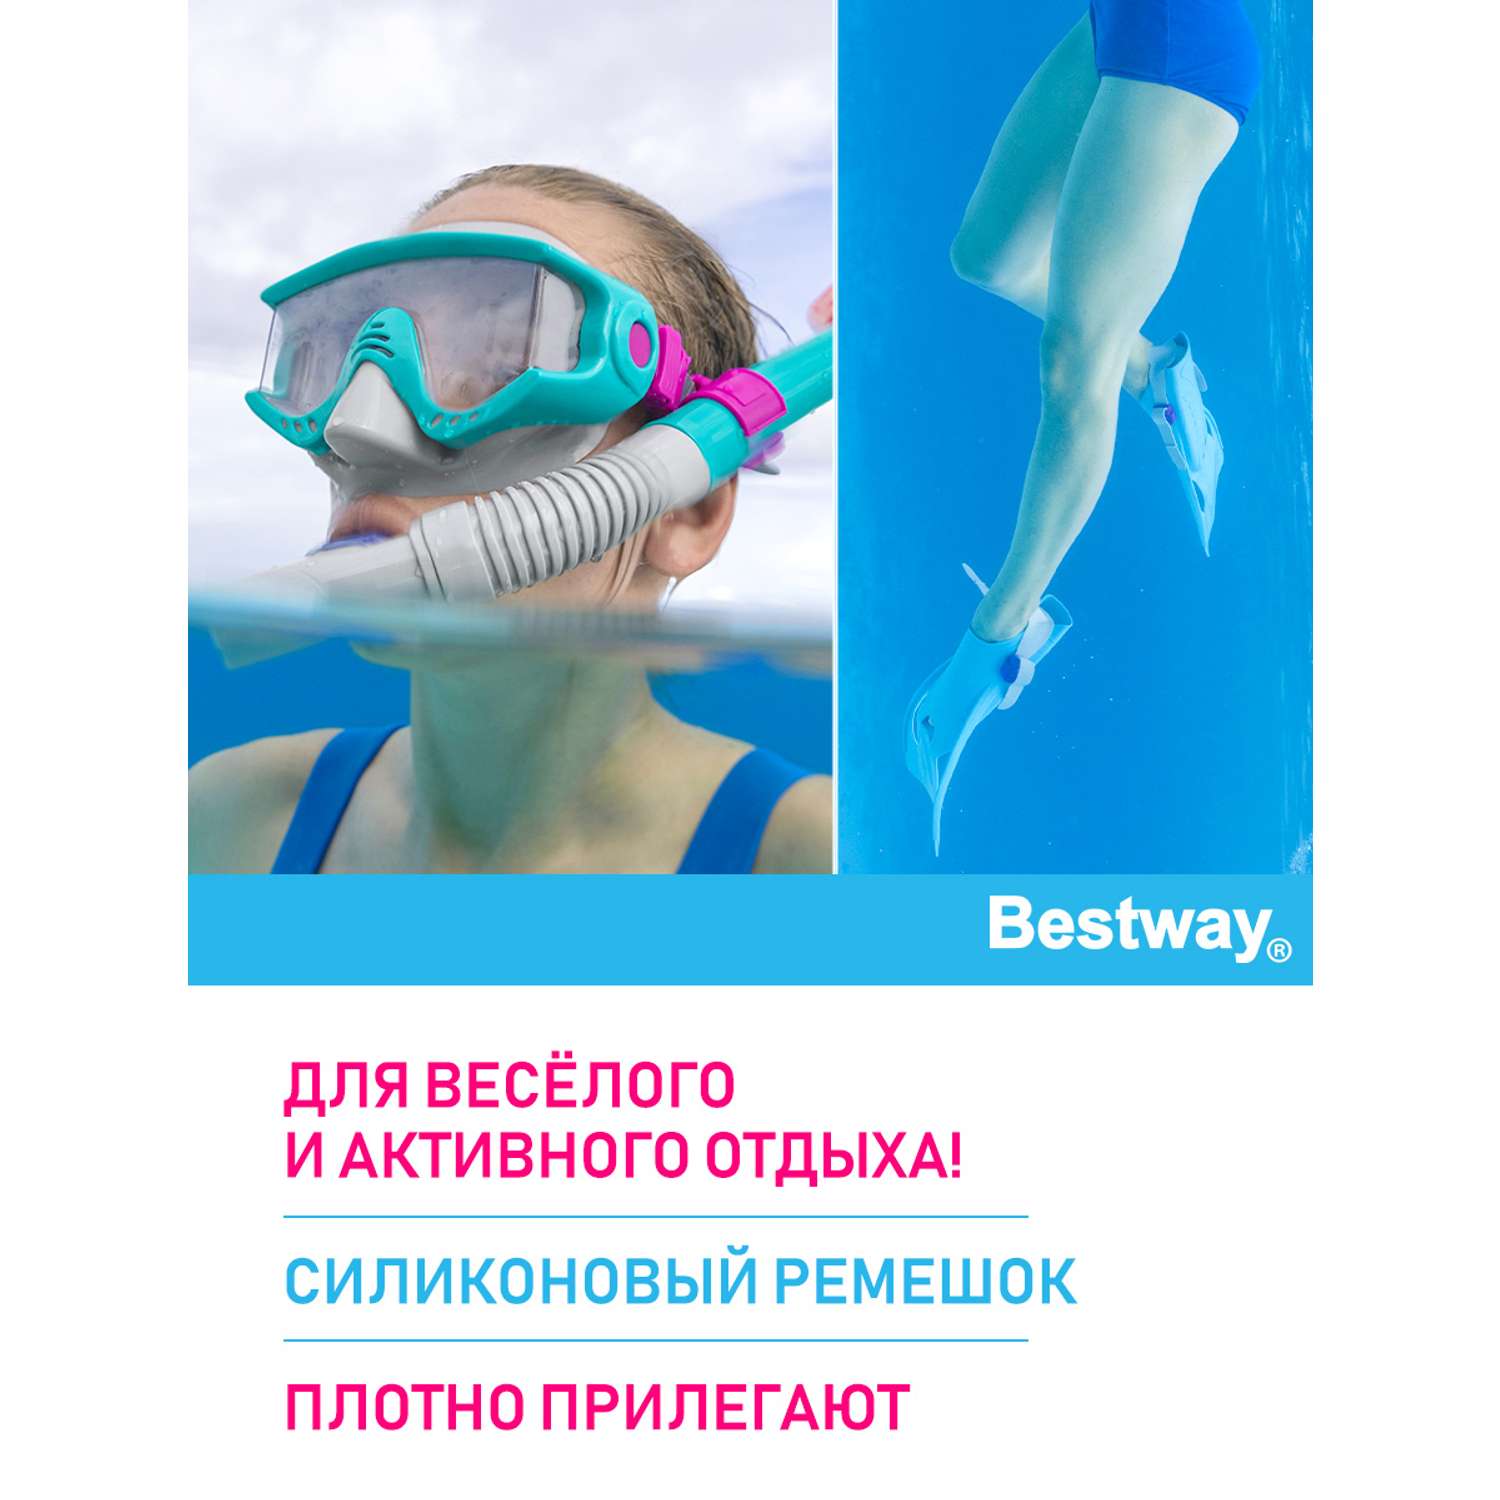 Набор для ныряния BESTWAY Bestway Meridian для взрослых маска+трубка+ласты Голубой - фото 2